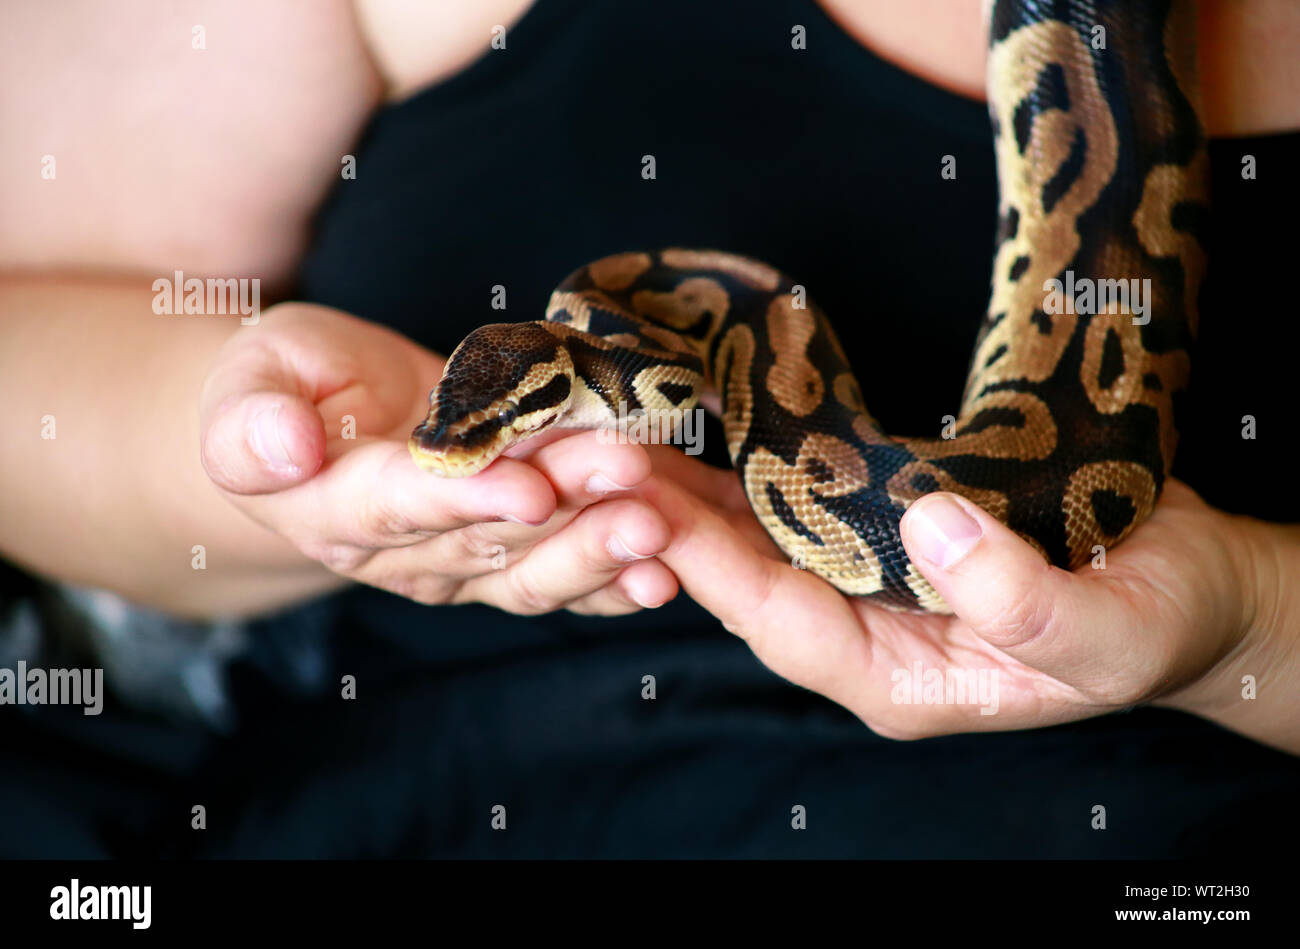 Weibliche Hände mit Royal Python Schlange. Frau hält Ball Python Schlange in die Hände. Exotischen tropischen kaltblütige Reptilien Tier, Python regius Schlange. Stockfoto